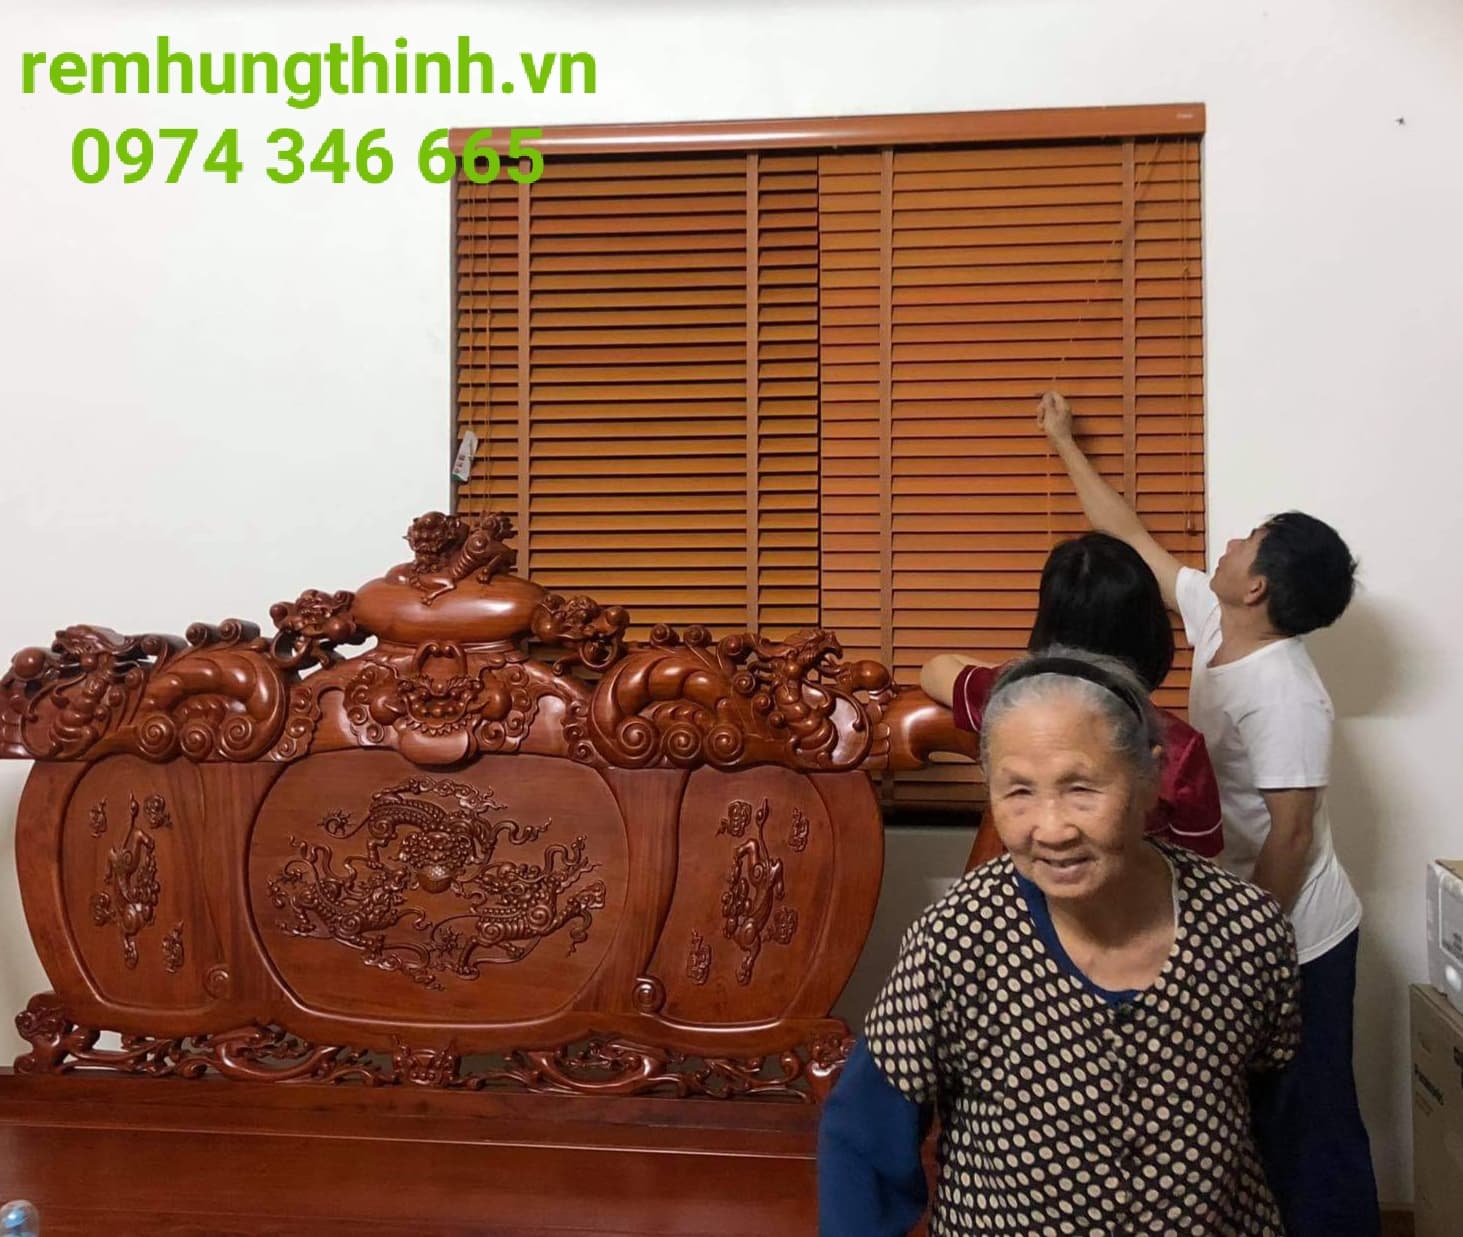 Rèm sáo gỗ được làm từ gỗ tự nhiên tại thị trấn Xuân Mai huyện Chương Mỹ, Hà Nội